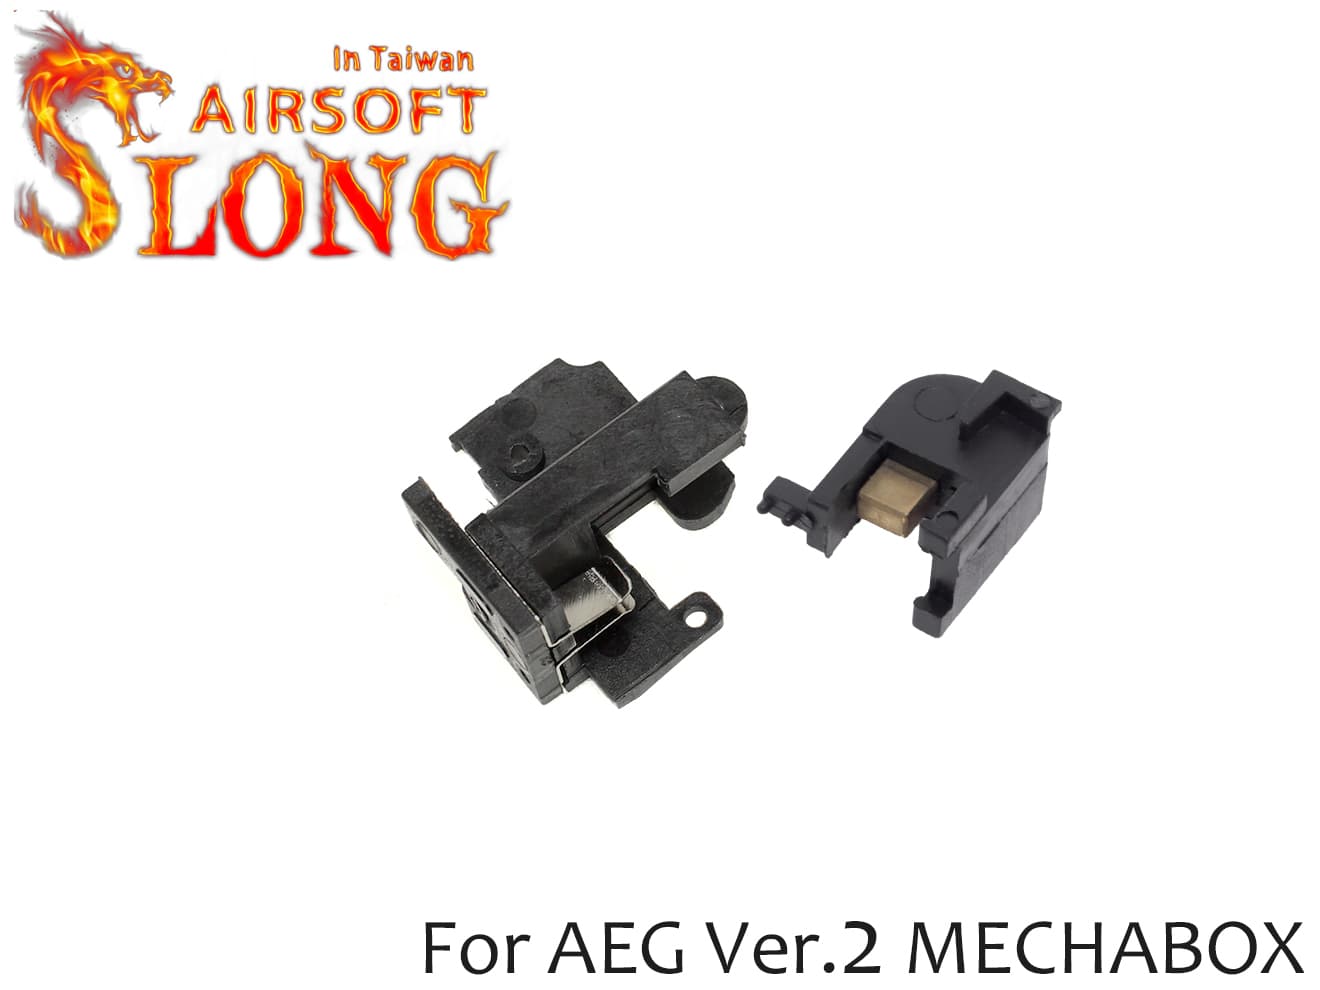 SLONG AIRSOFT 強化スイッチSET VER2 スタンダード 電動ガン バージョン2 メカボックス対応 スイッチセット 耐久性アップ 補修 リペアにも